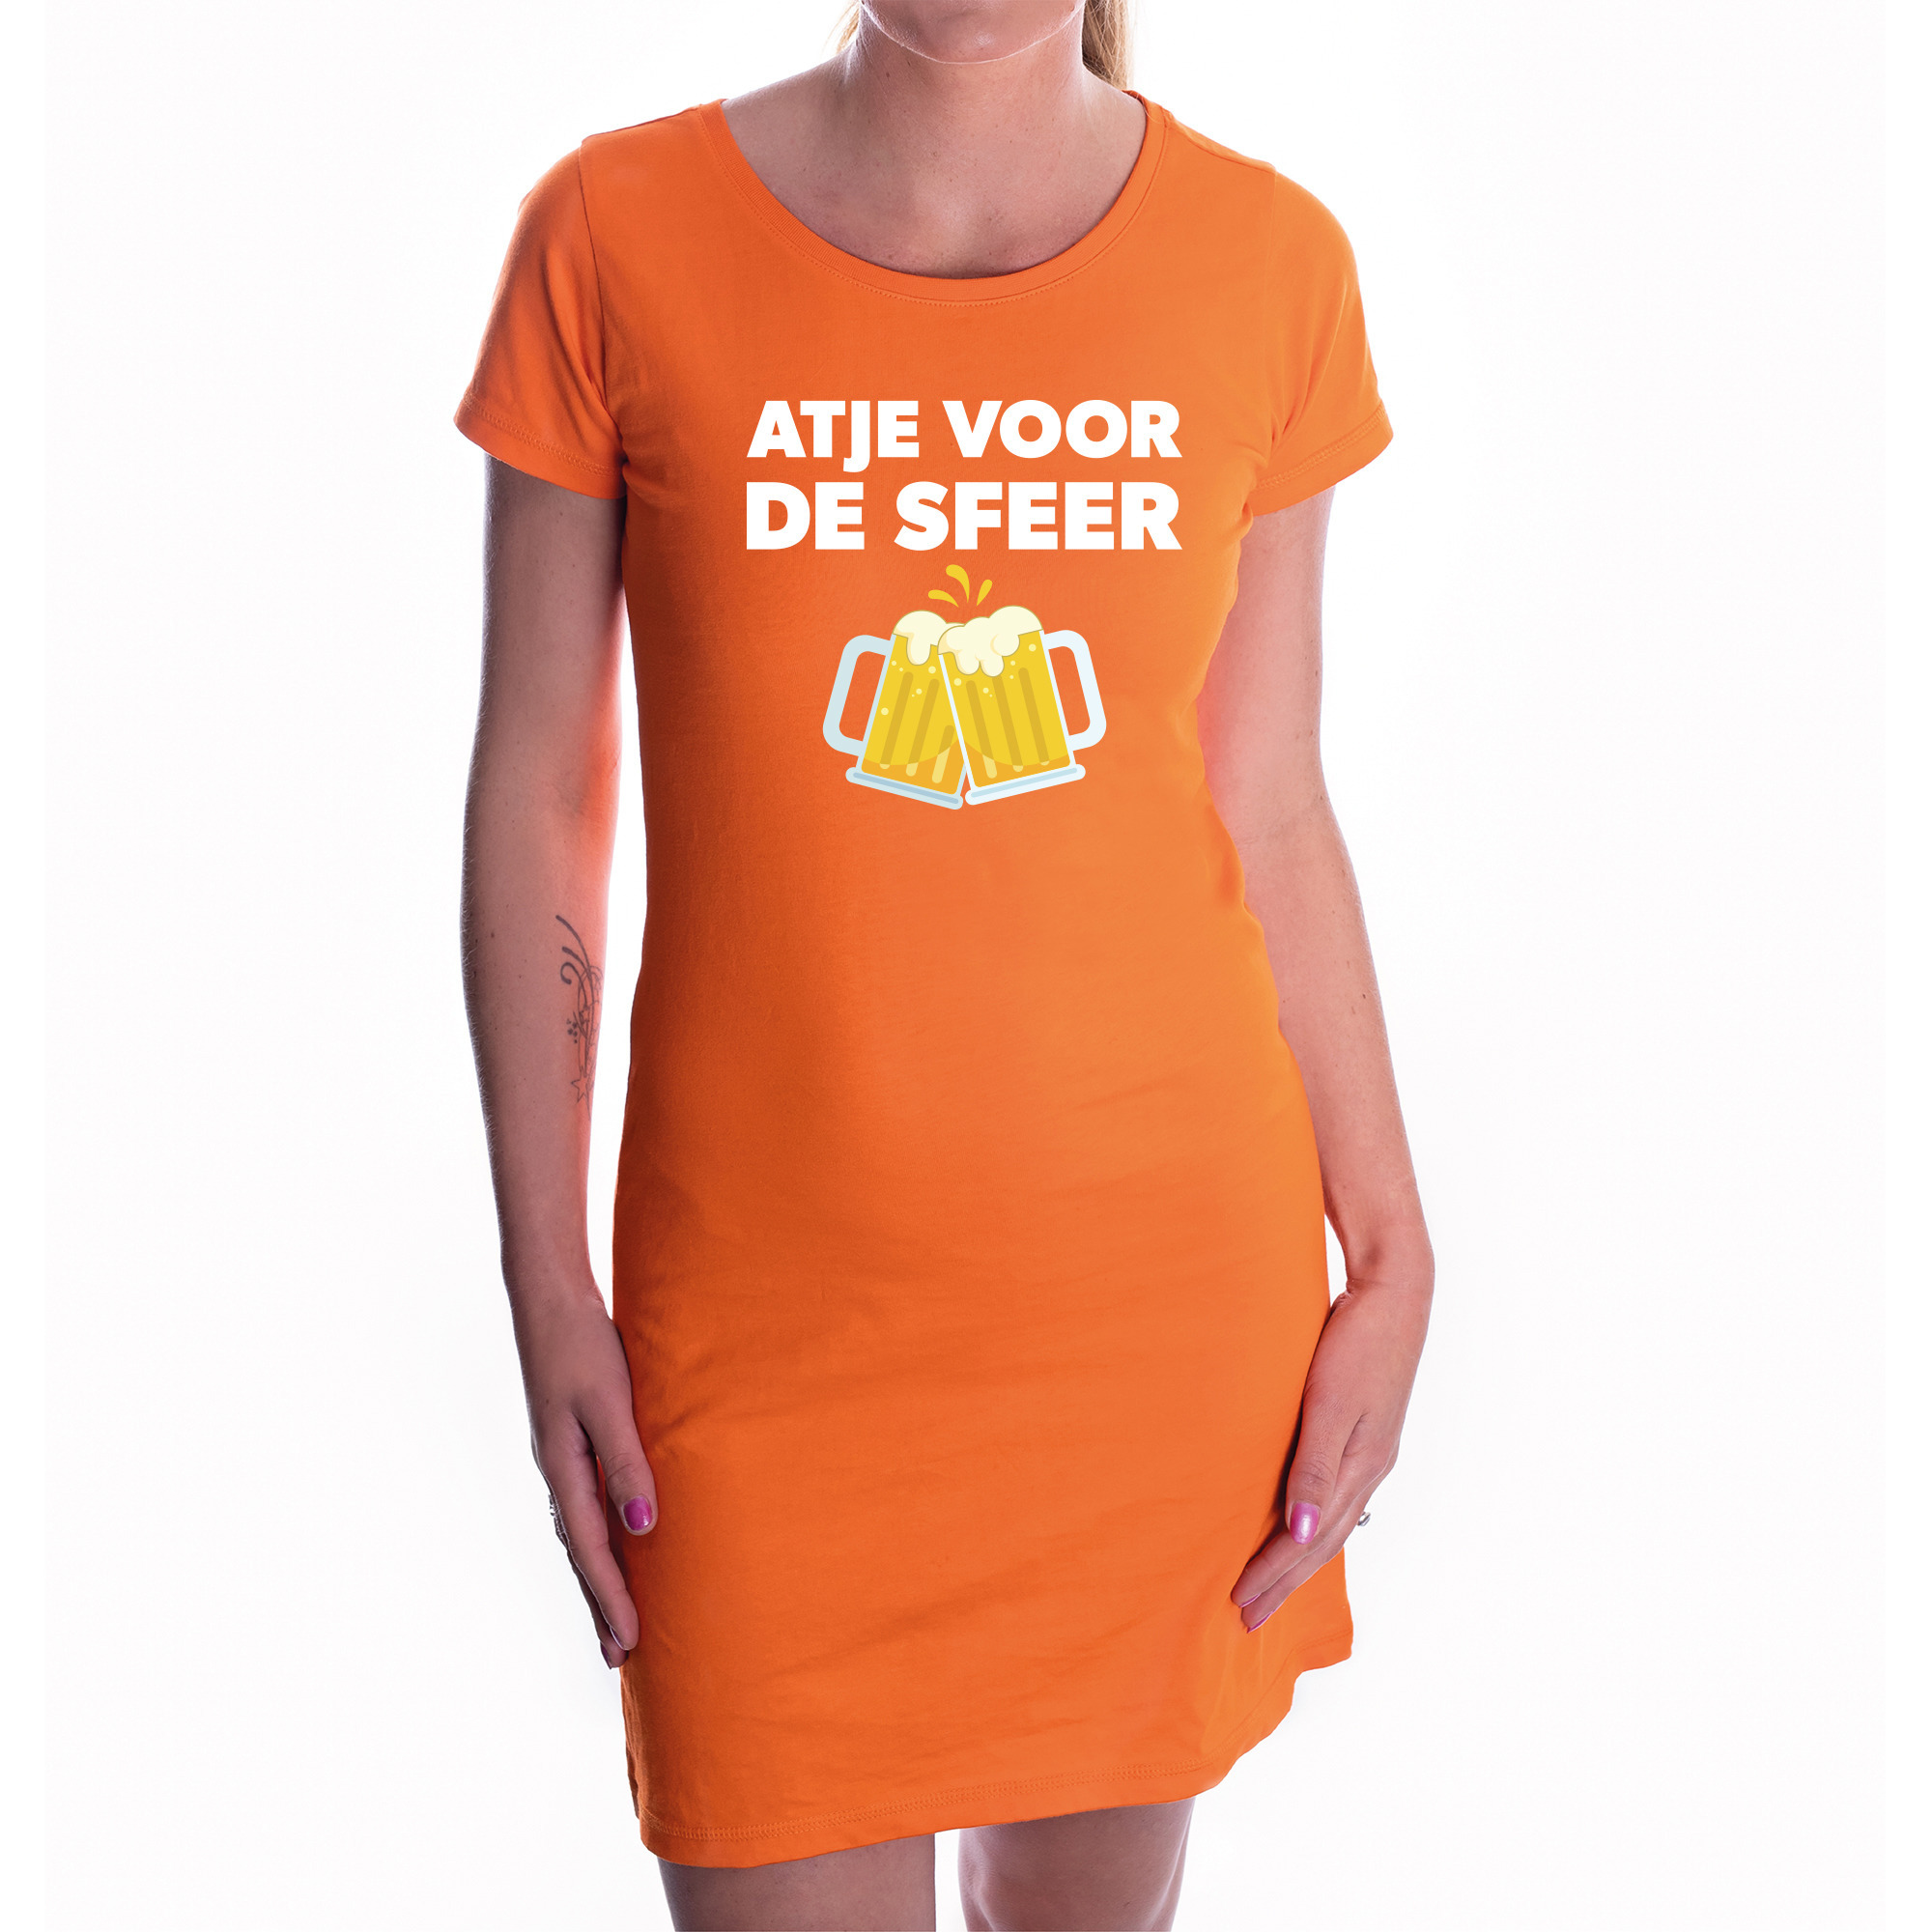 Oranje feest jurk met atje voor de sfeer bedrukking